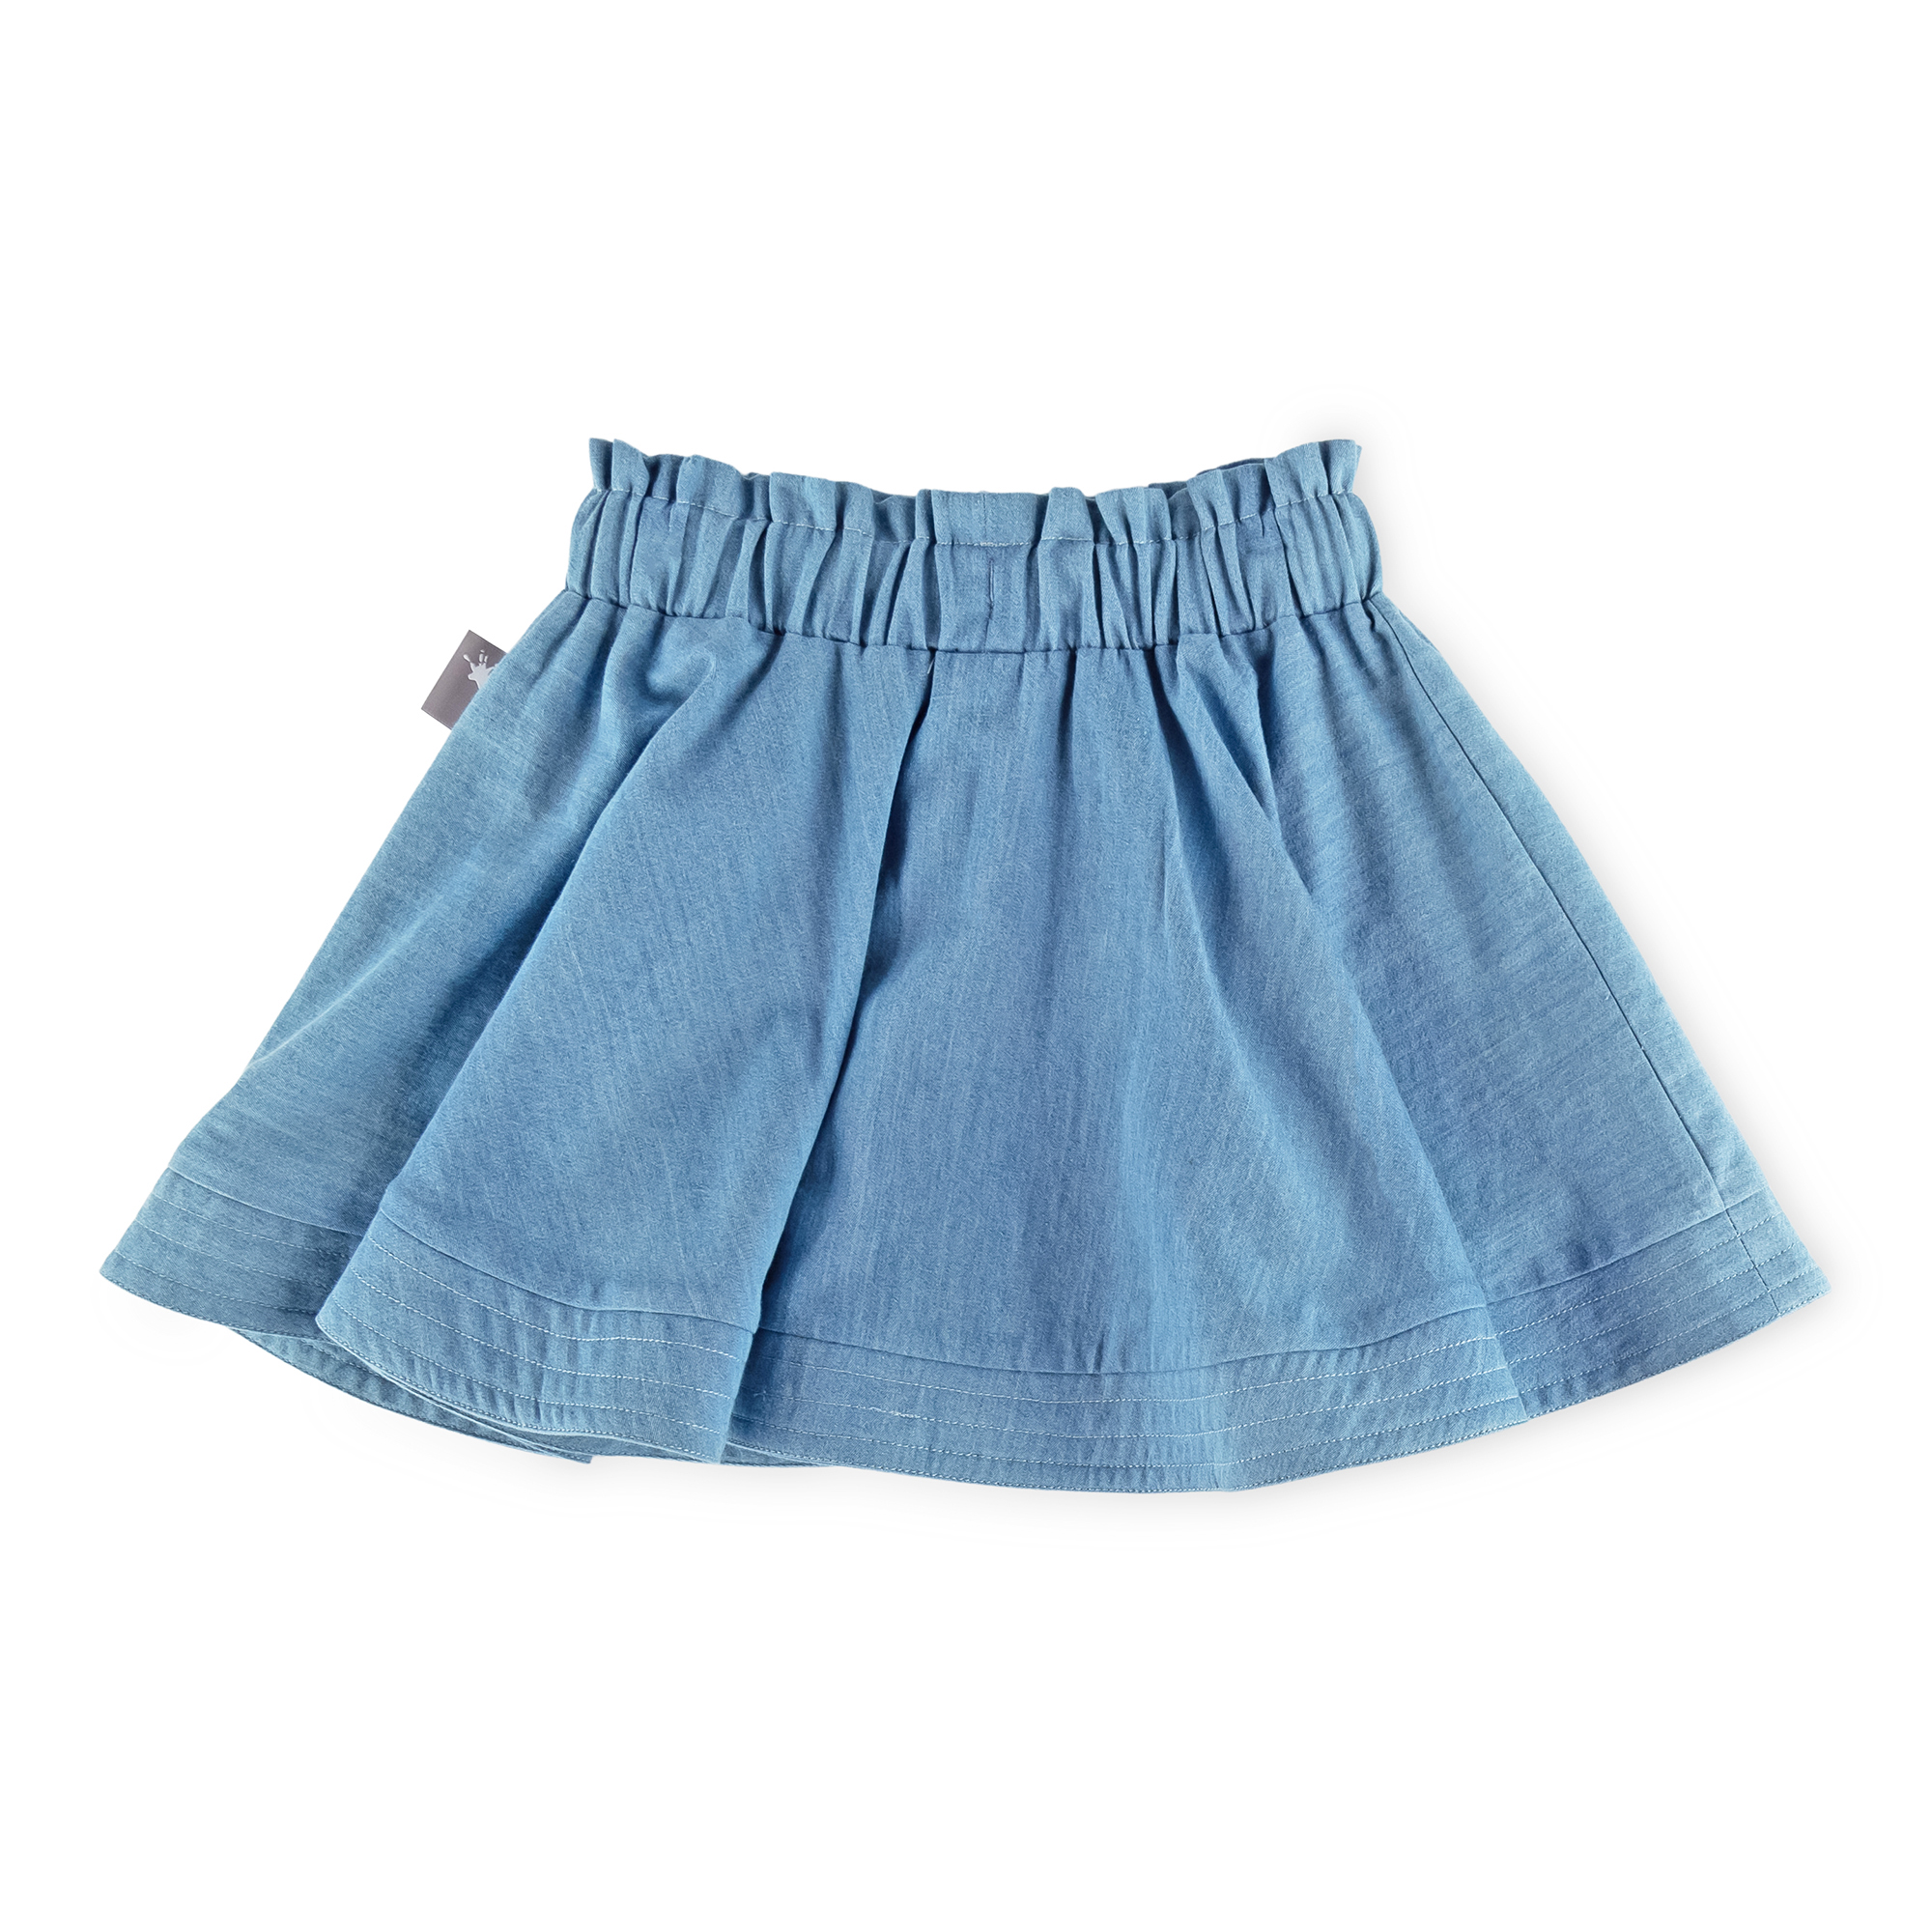 Kids' girls' summer circle skirt with pockets, light blue